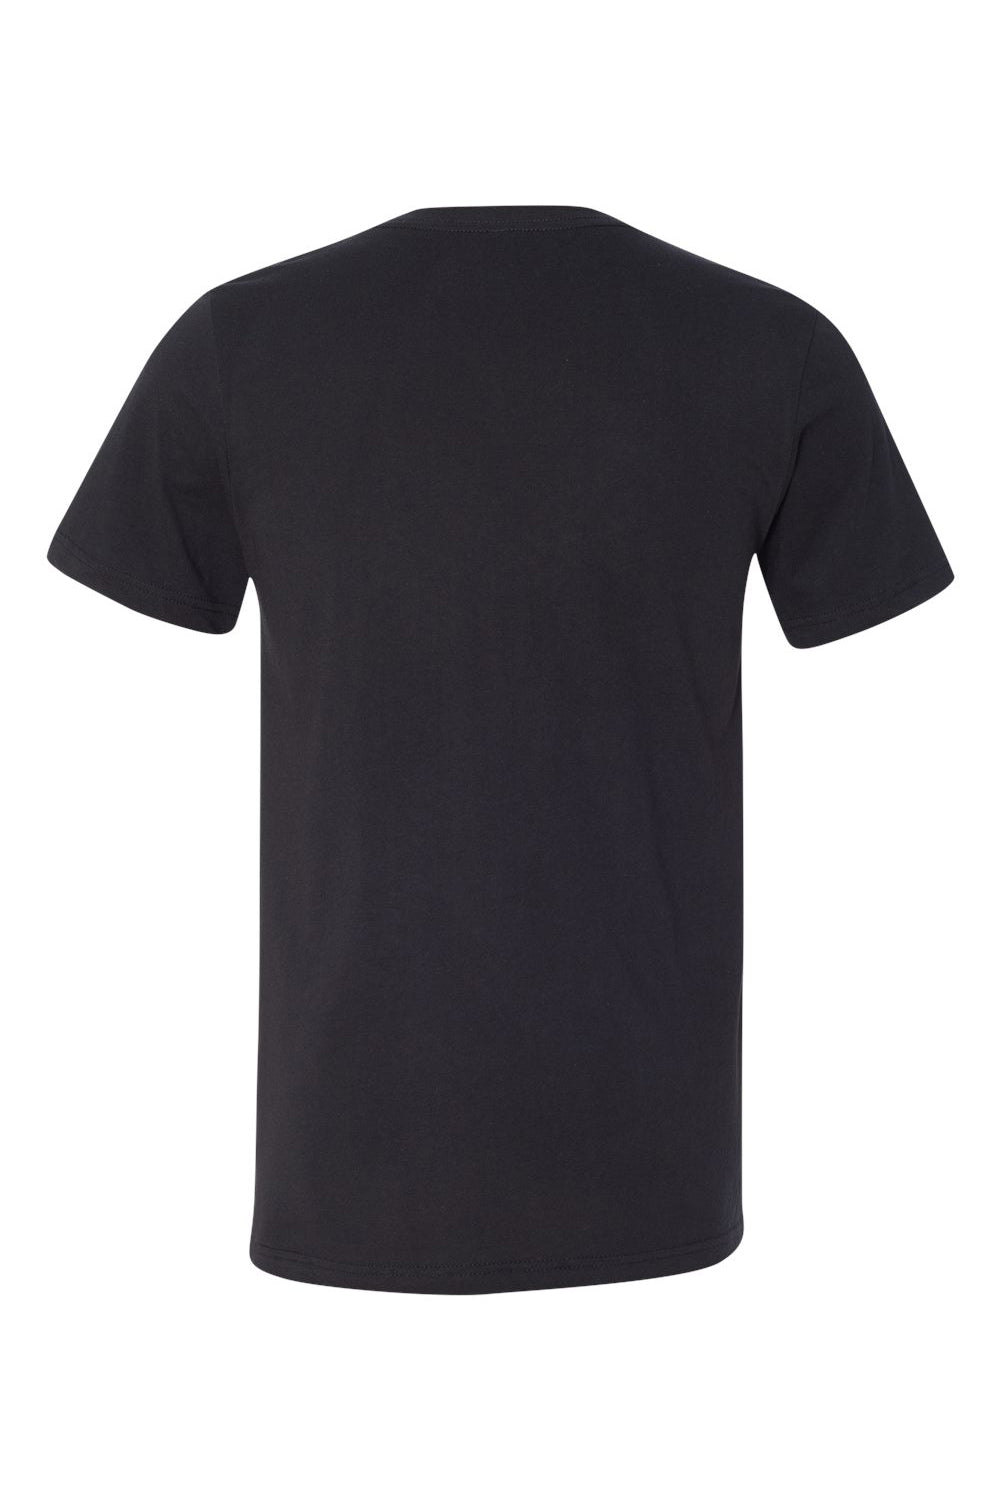 Bella + Canvas BC3005/3005/3655C Mens Jersey Short Sleeve V-Neck T-Shirt Vintage Black Flat Back